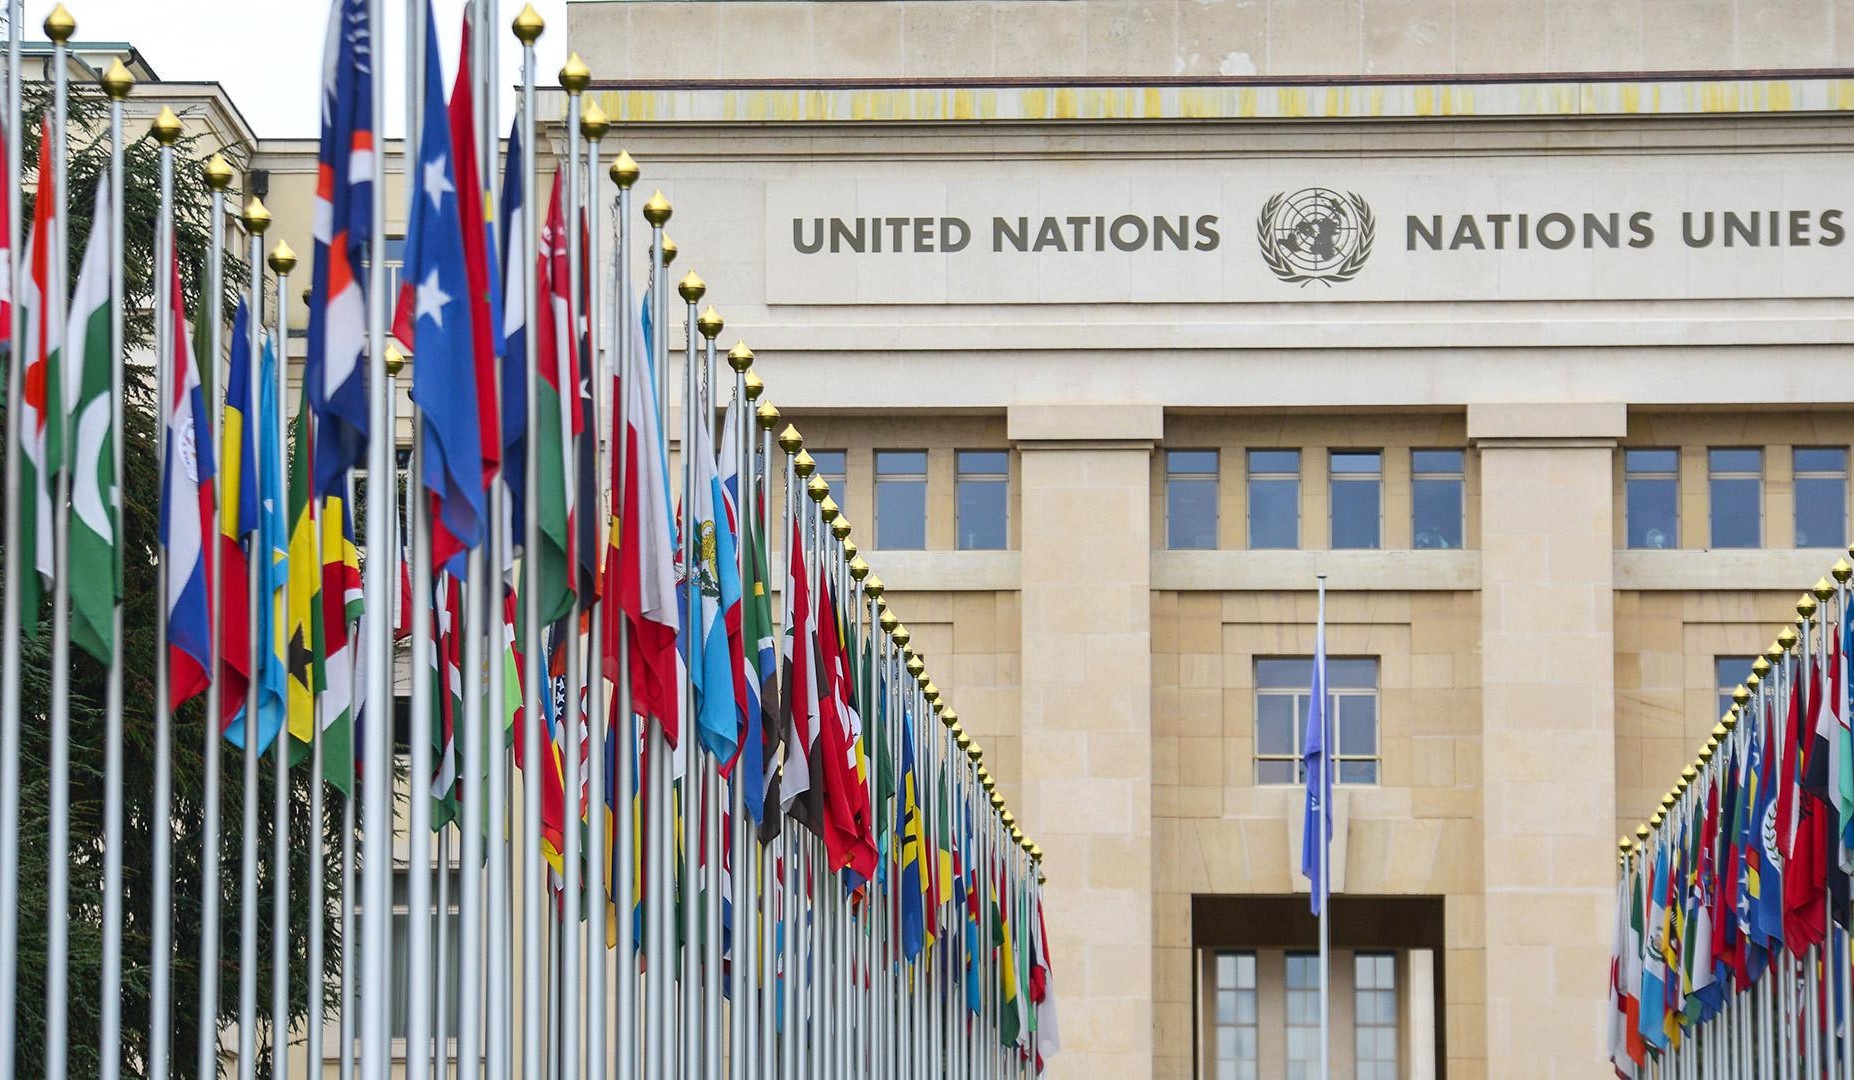 Դատապարտելի է ՄԱԿ-ի ներկայացուցիչների այցը օկուպացված Շուշի և ադրբեջանական սադրանքին մասնակցությունը. Արտակ Բեգլարյան